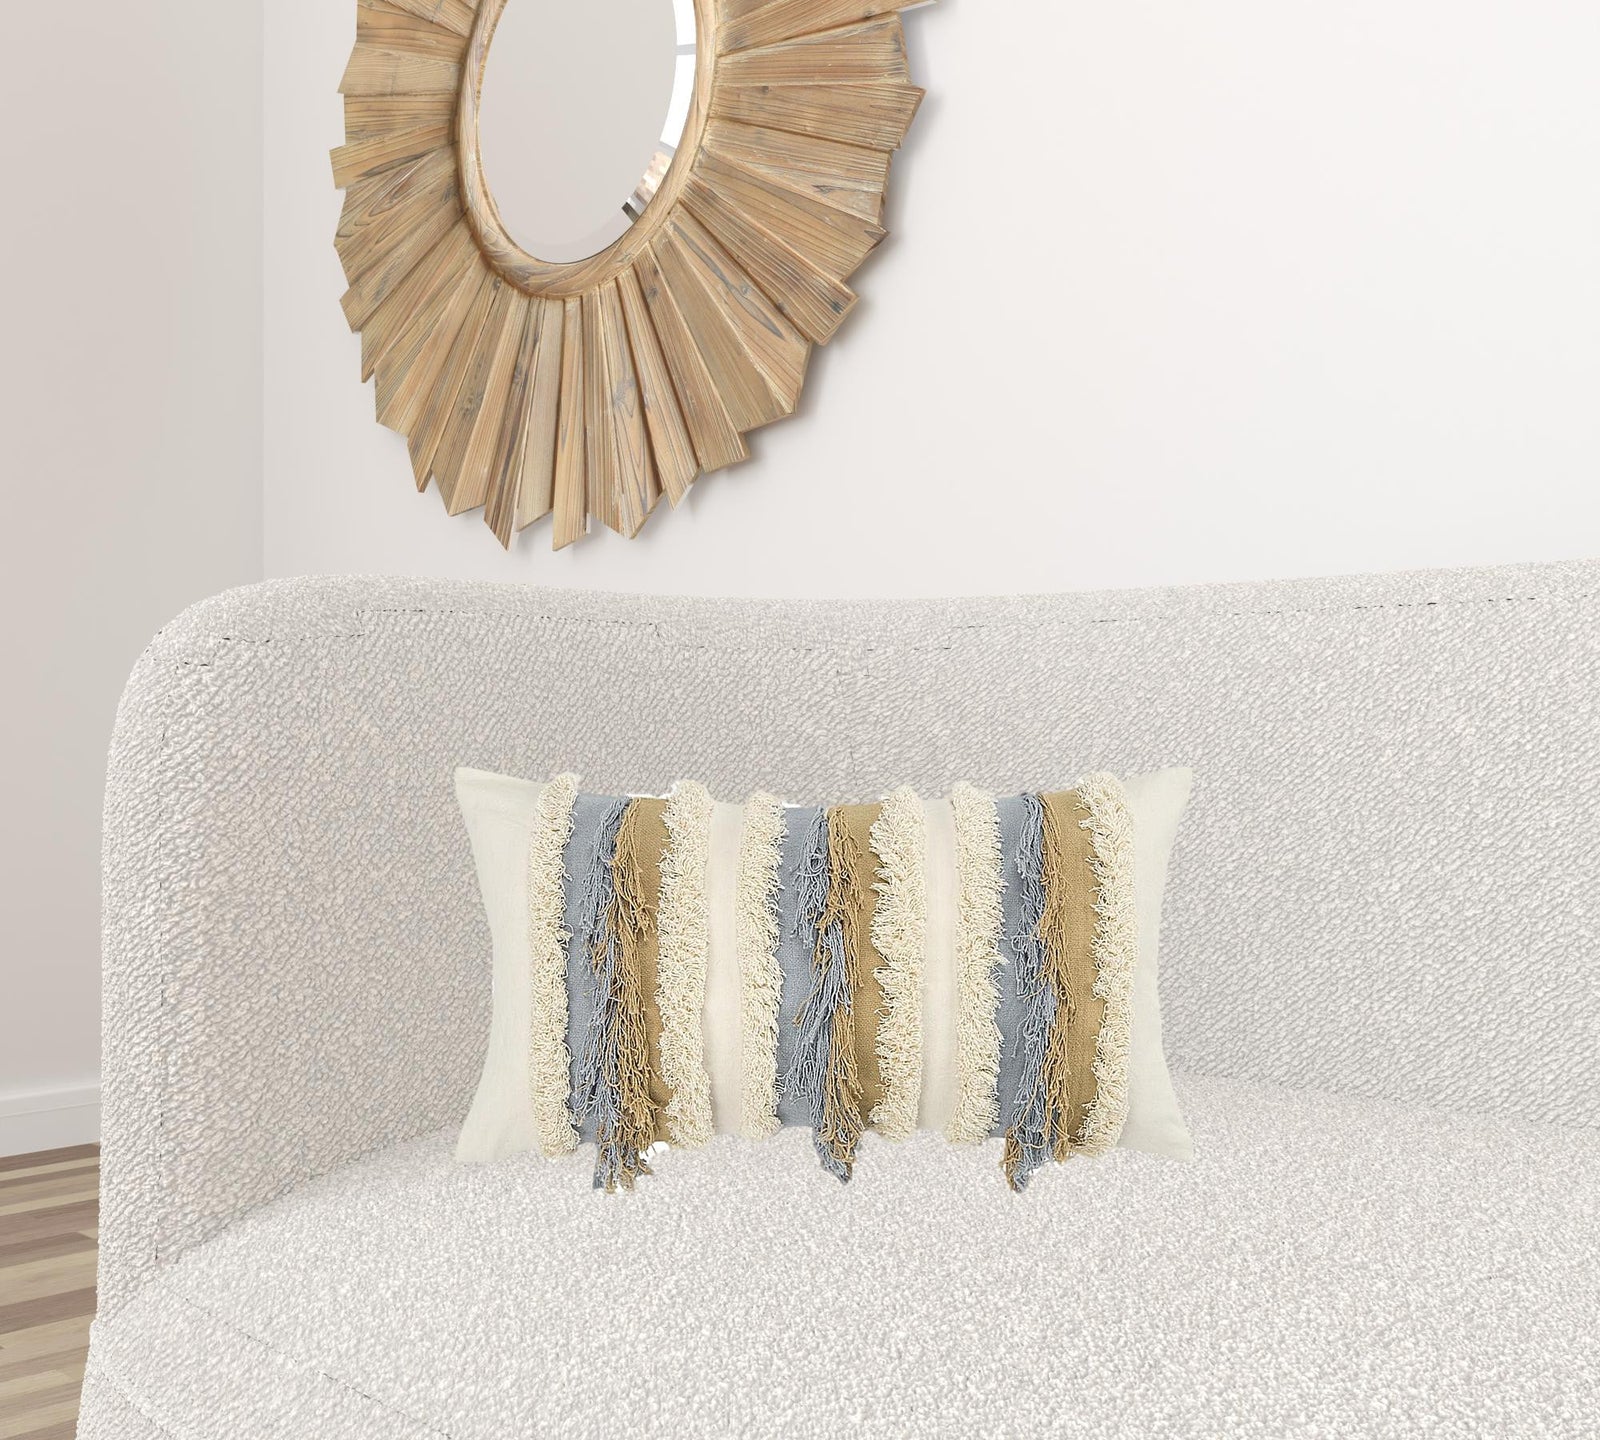 Ivory Beige Textural Strands Lumbar Pillow